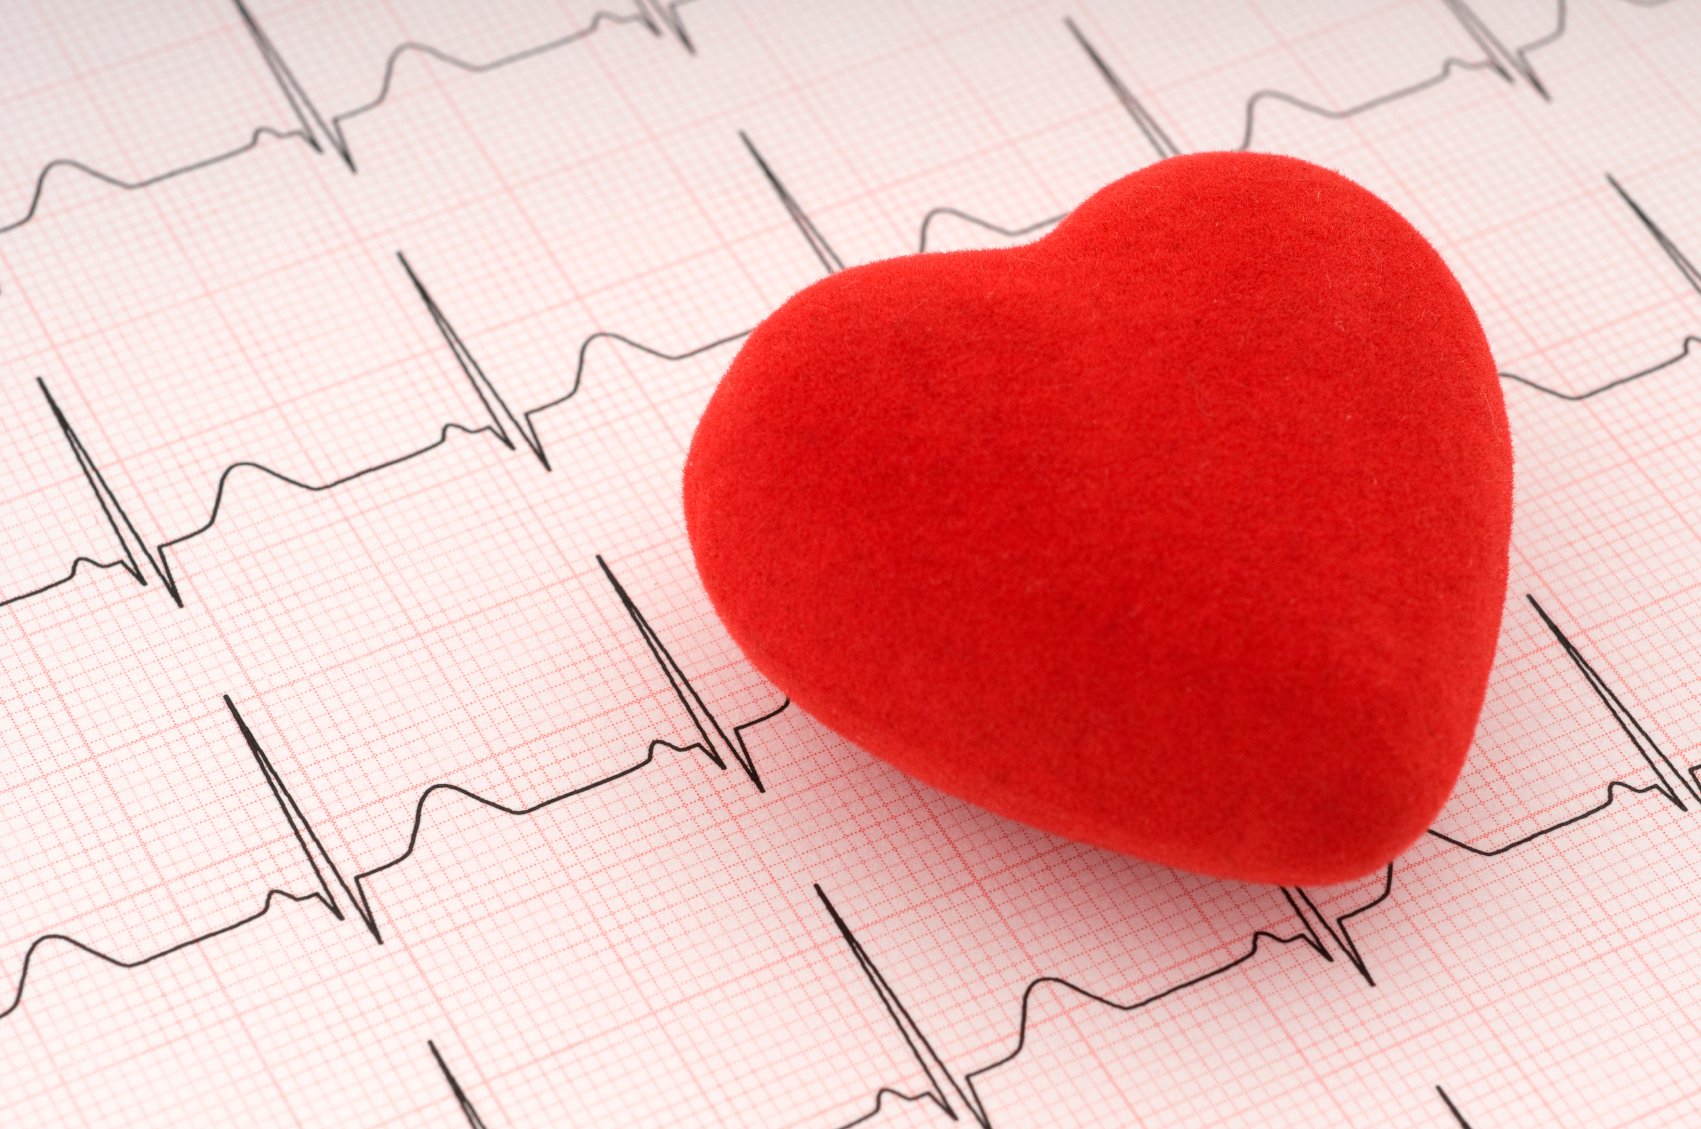 Il cuore delle donne: come prevenire i disturbi cardiovascolari - Starbene